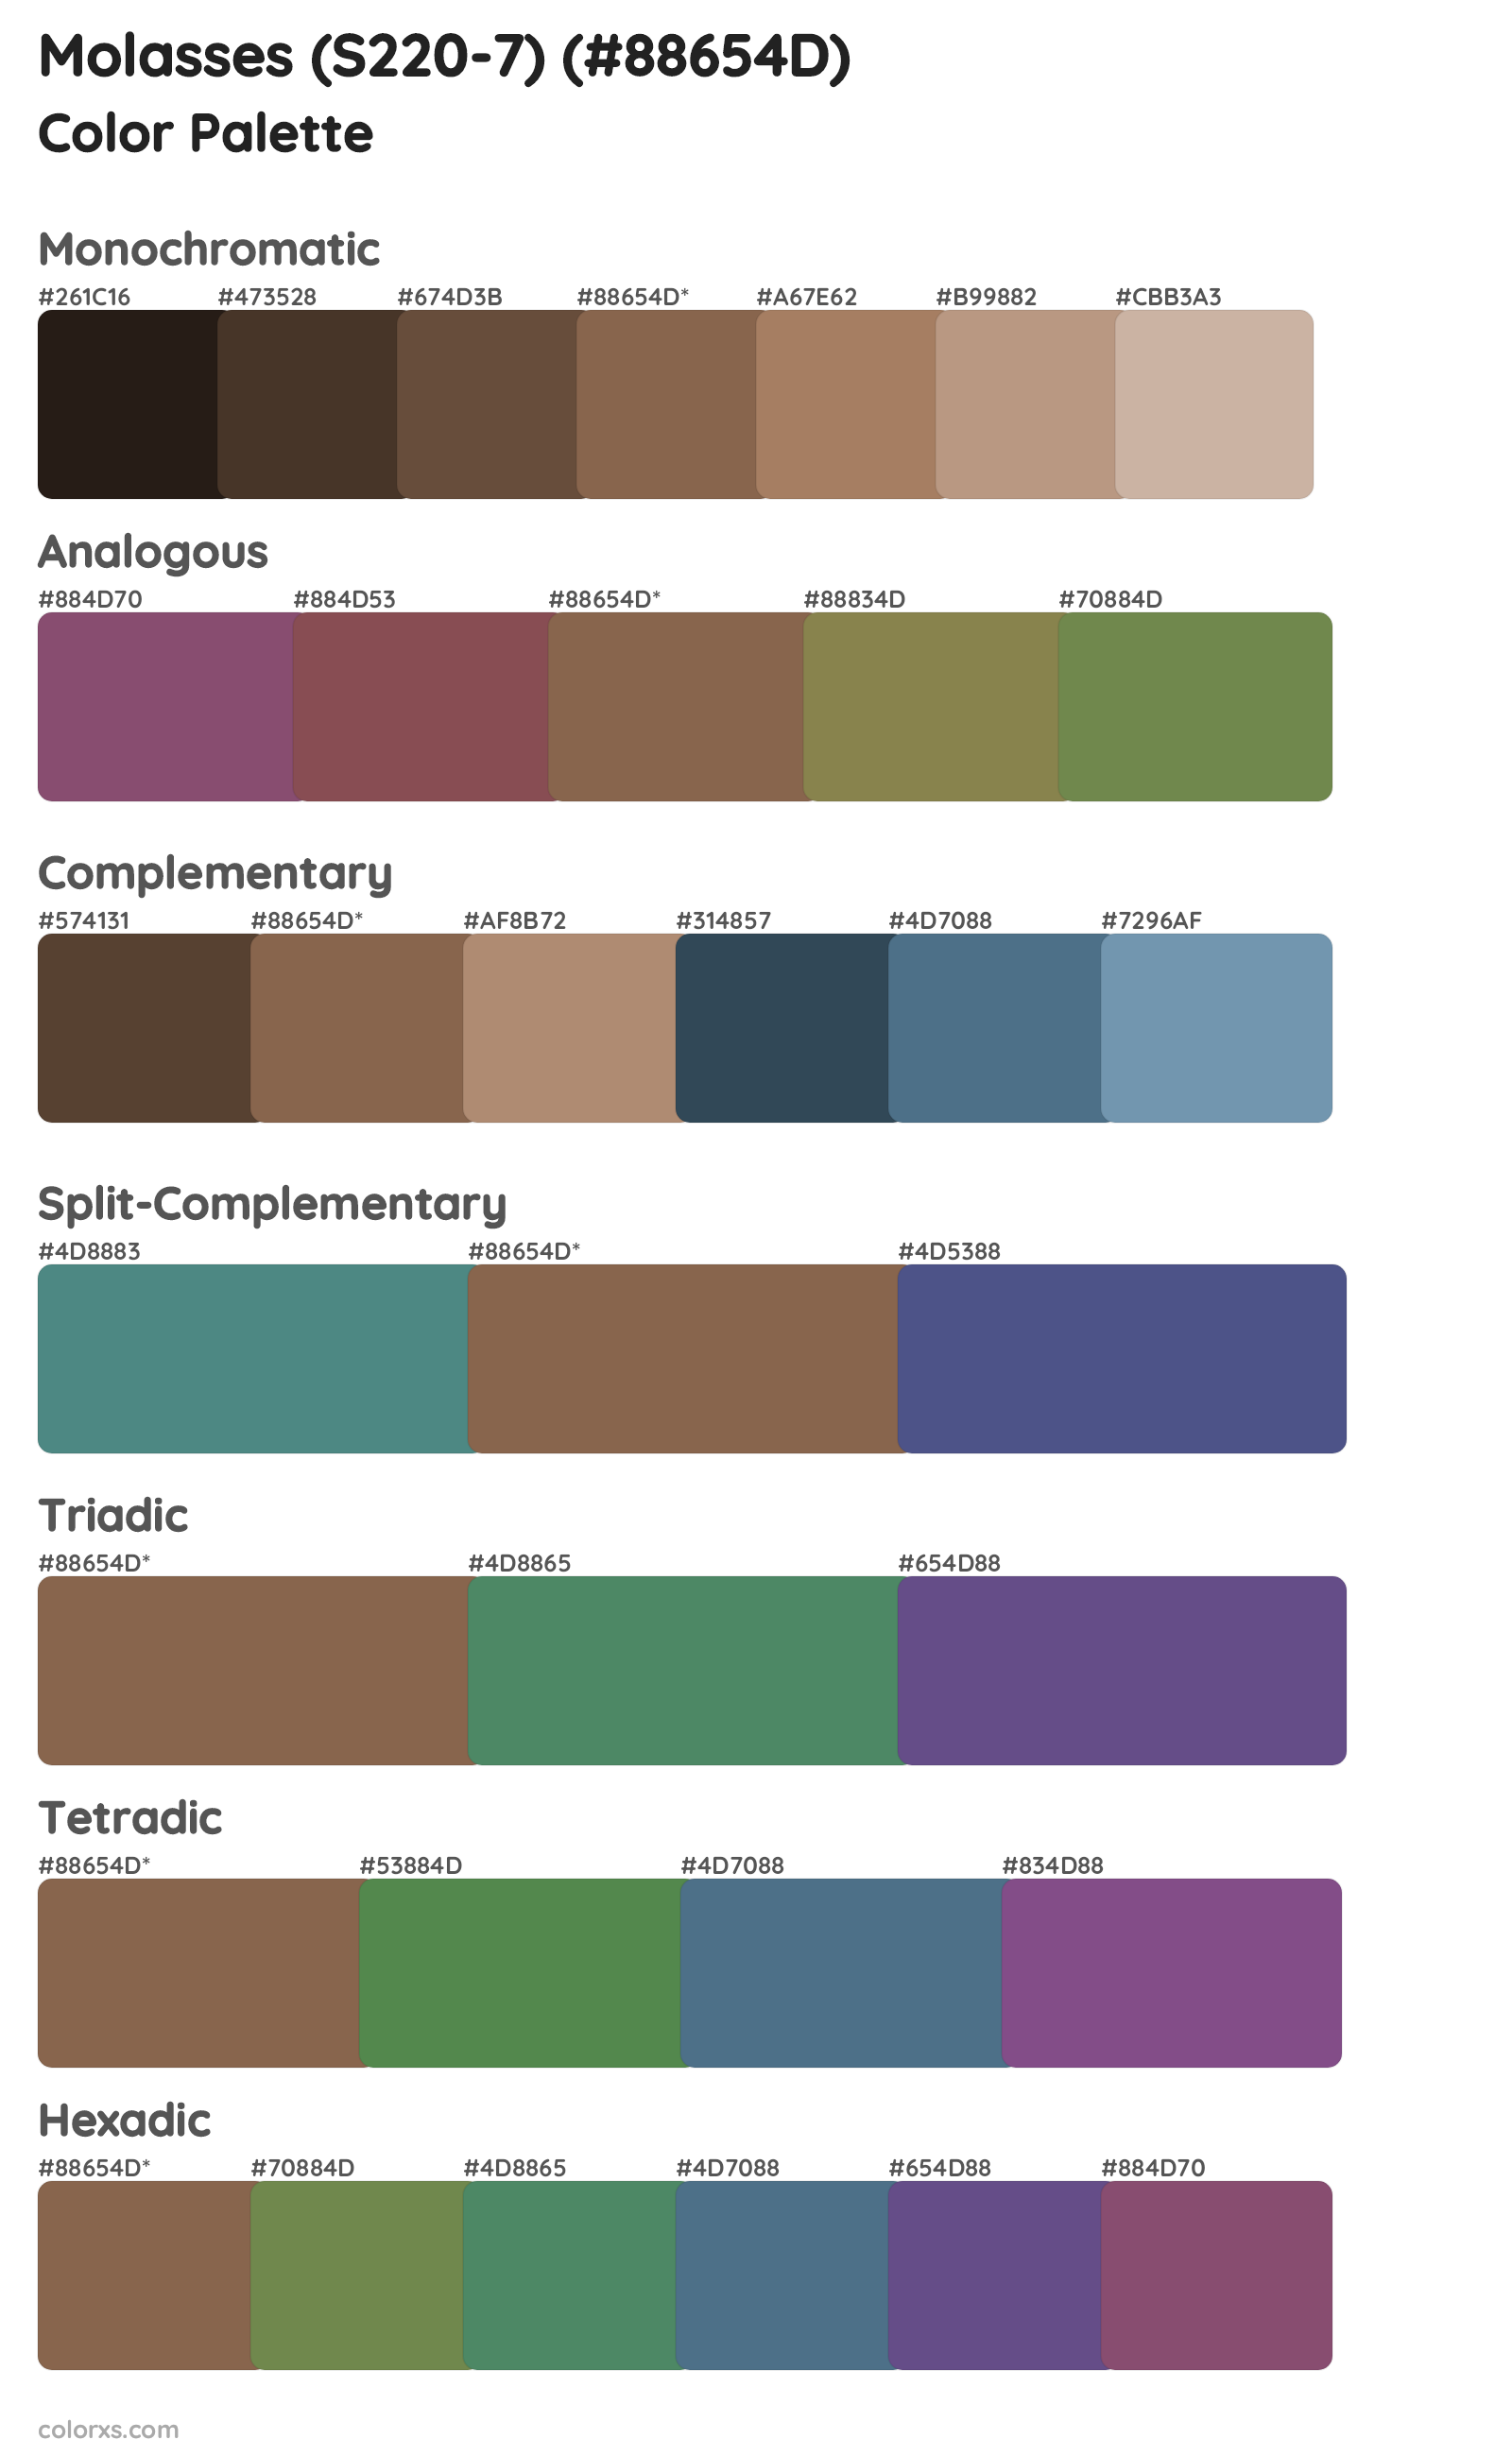 Molasses (S220-7) Color Scheme Palettes